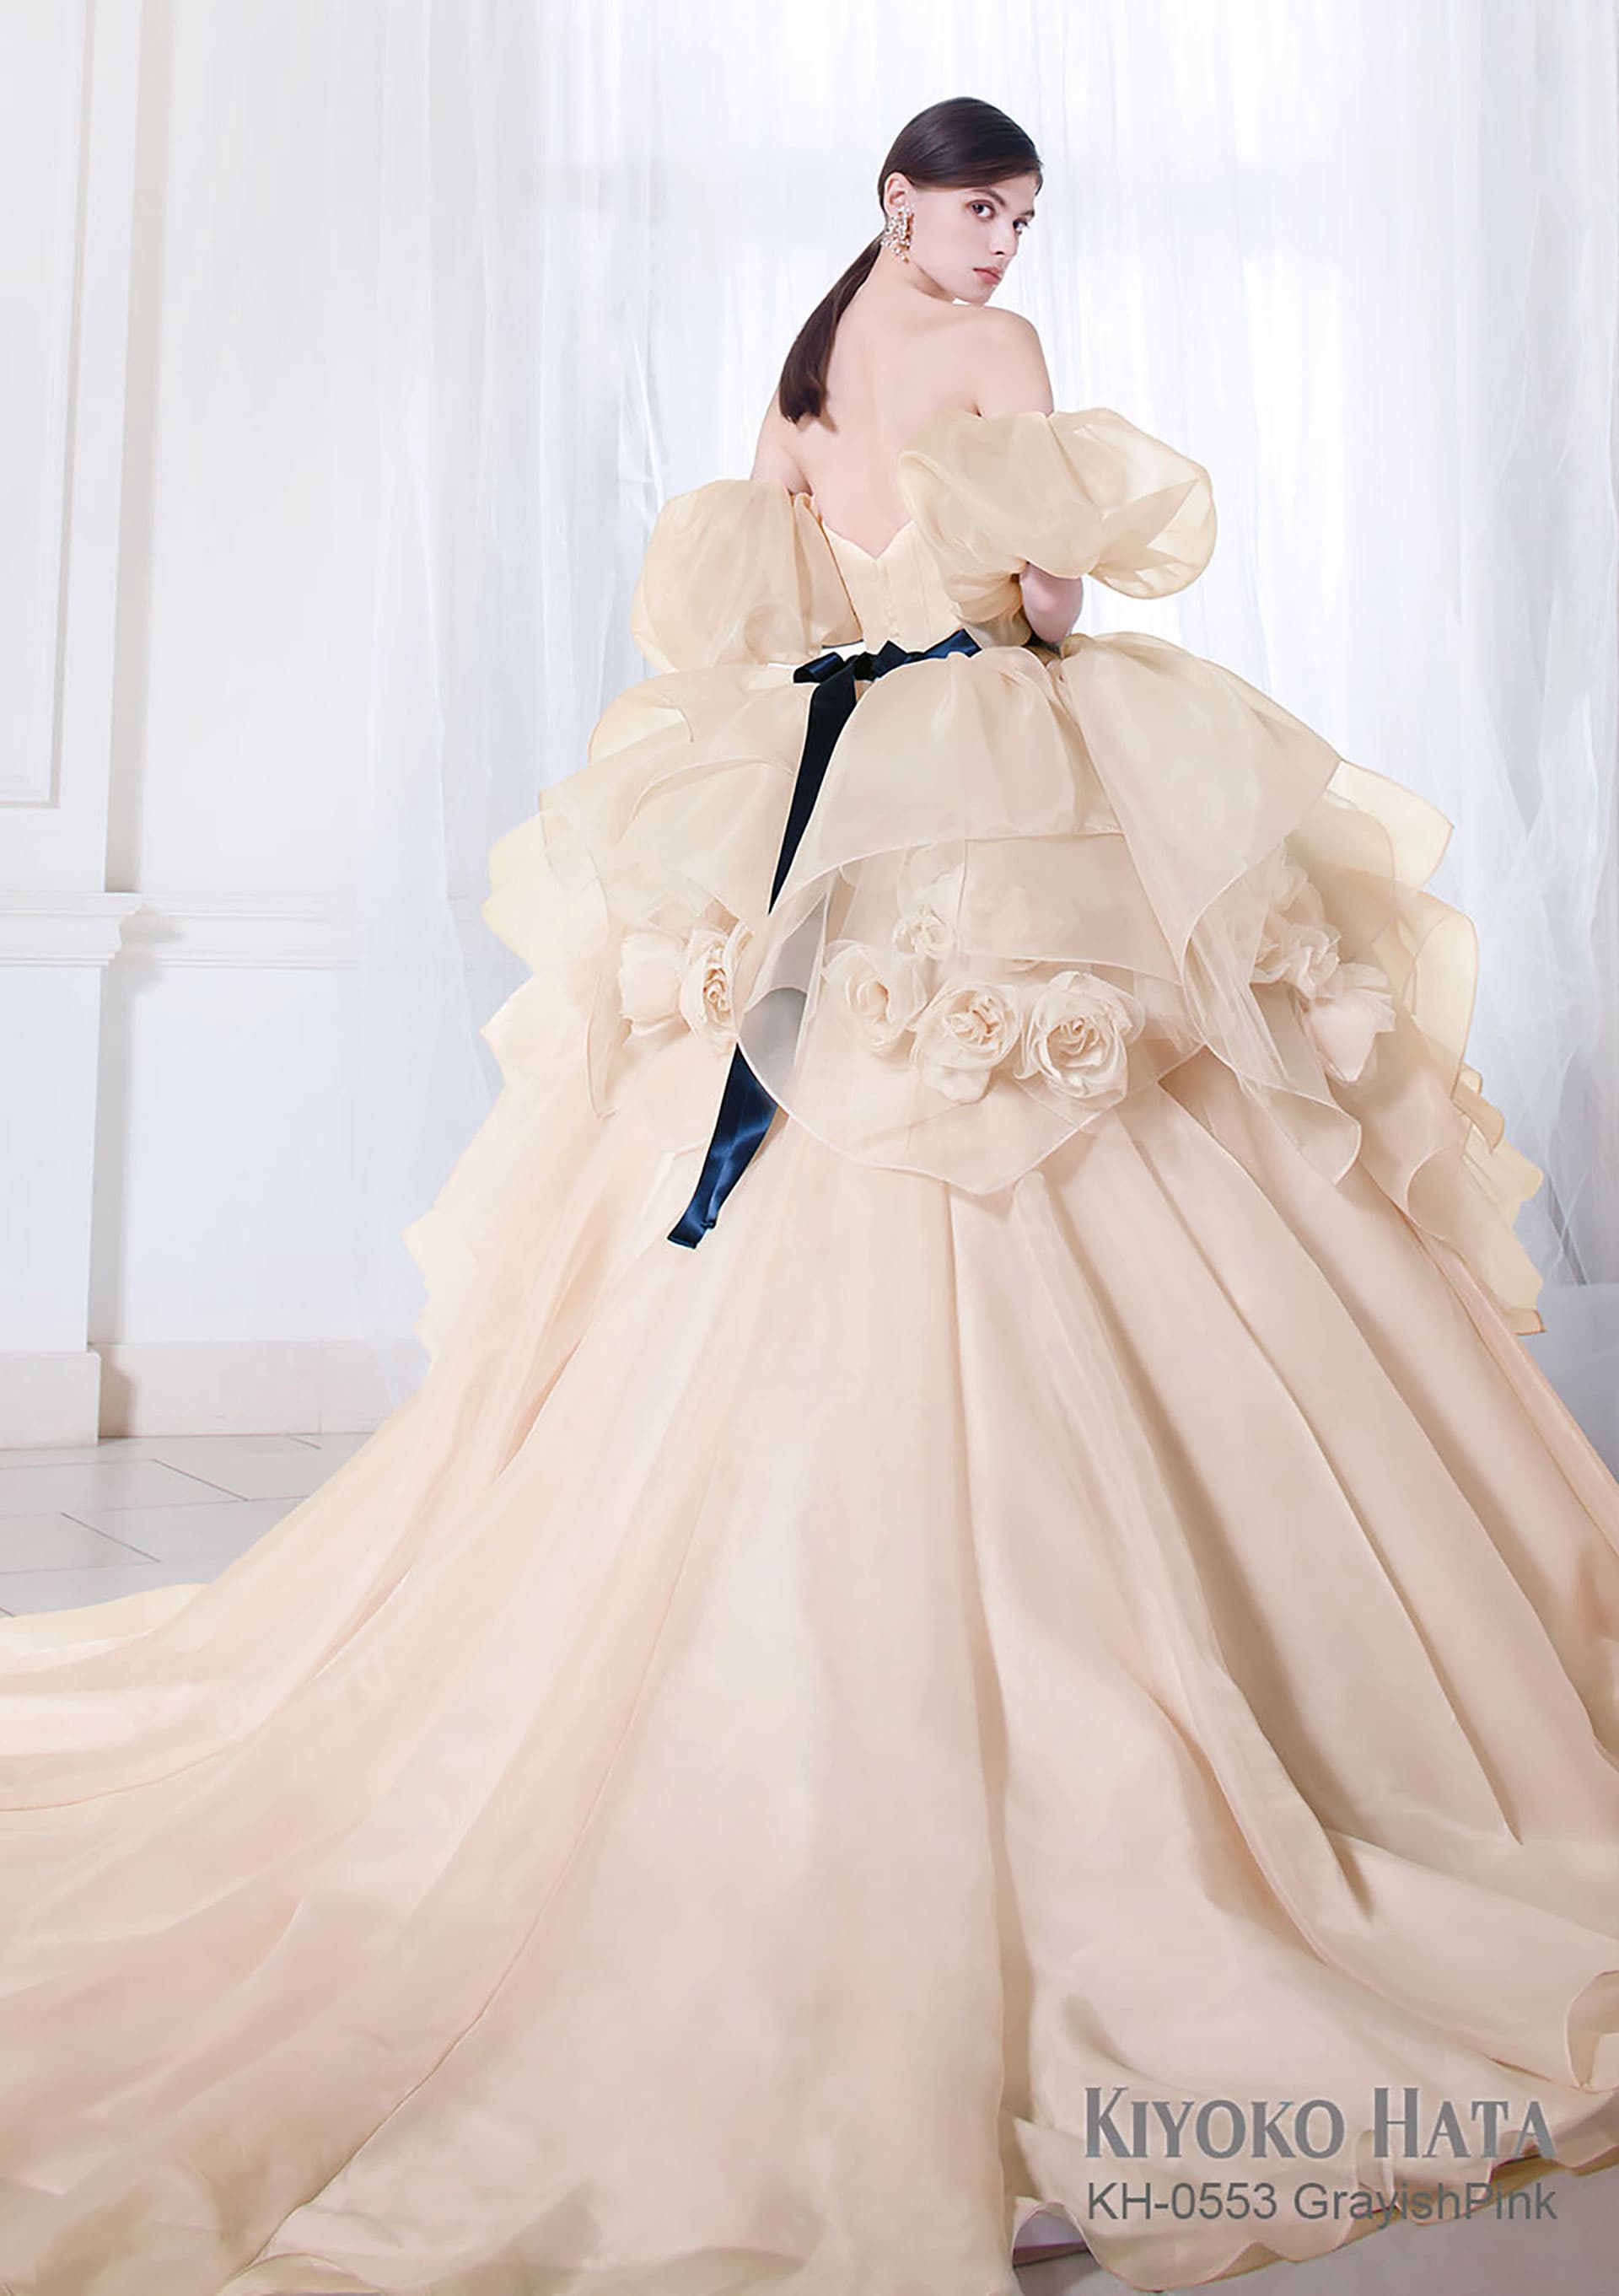 人気商品ランキング キヨコハタ KH-1006 結婚式 ウェディングドレス 